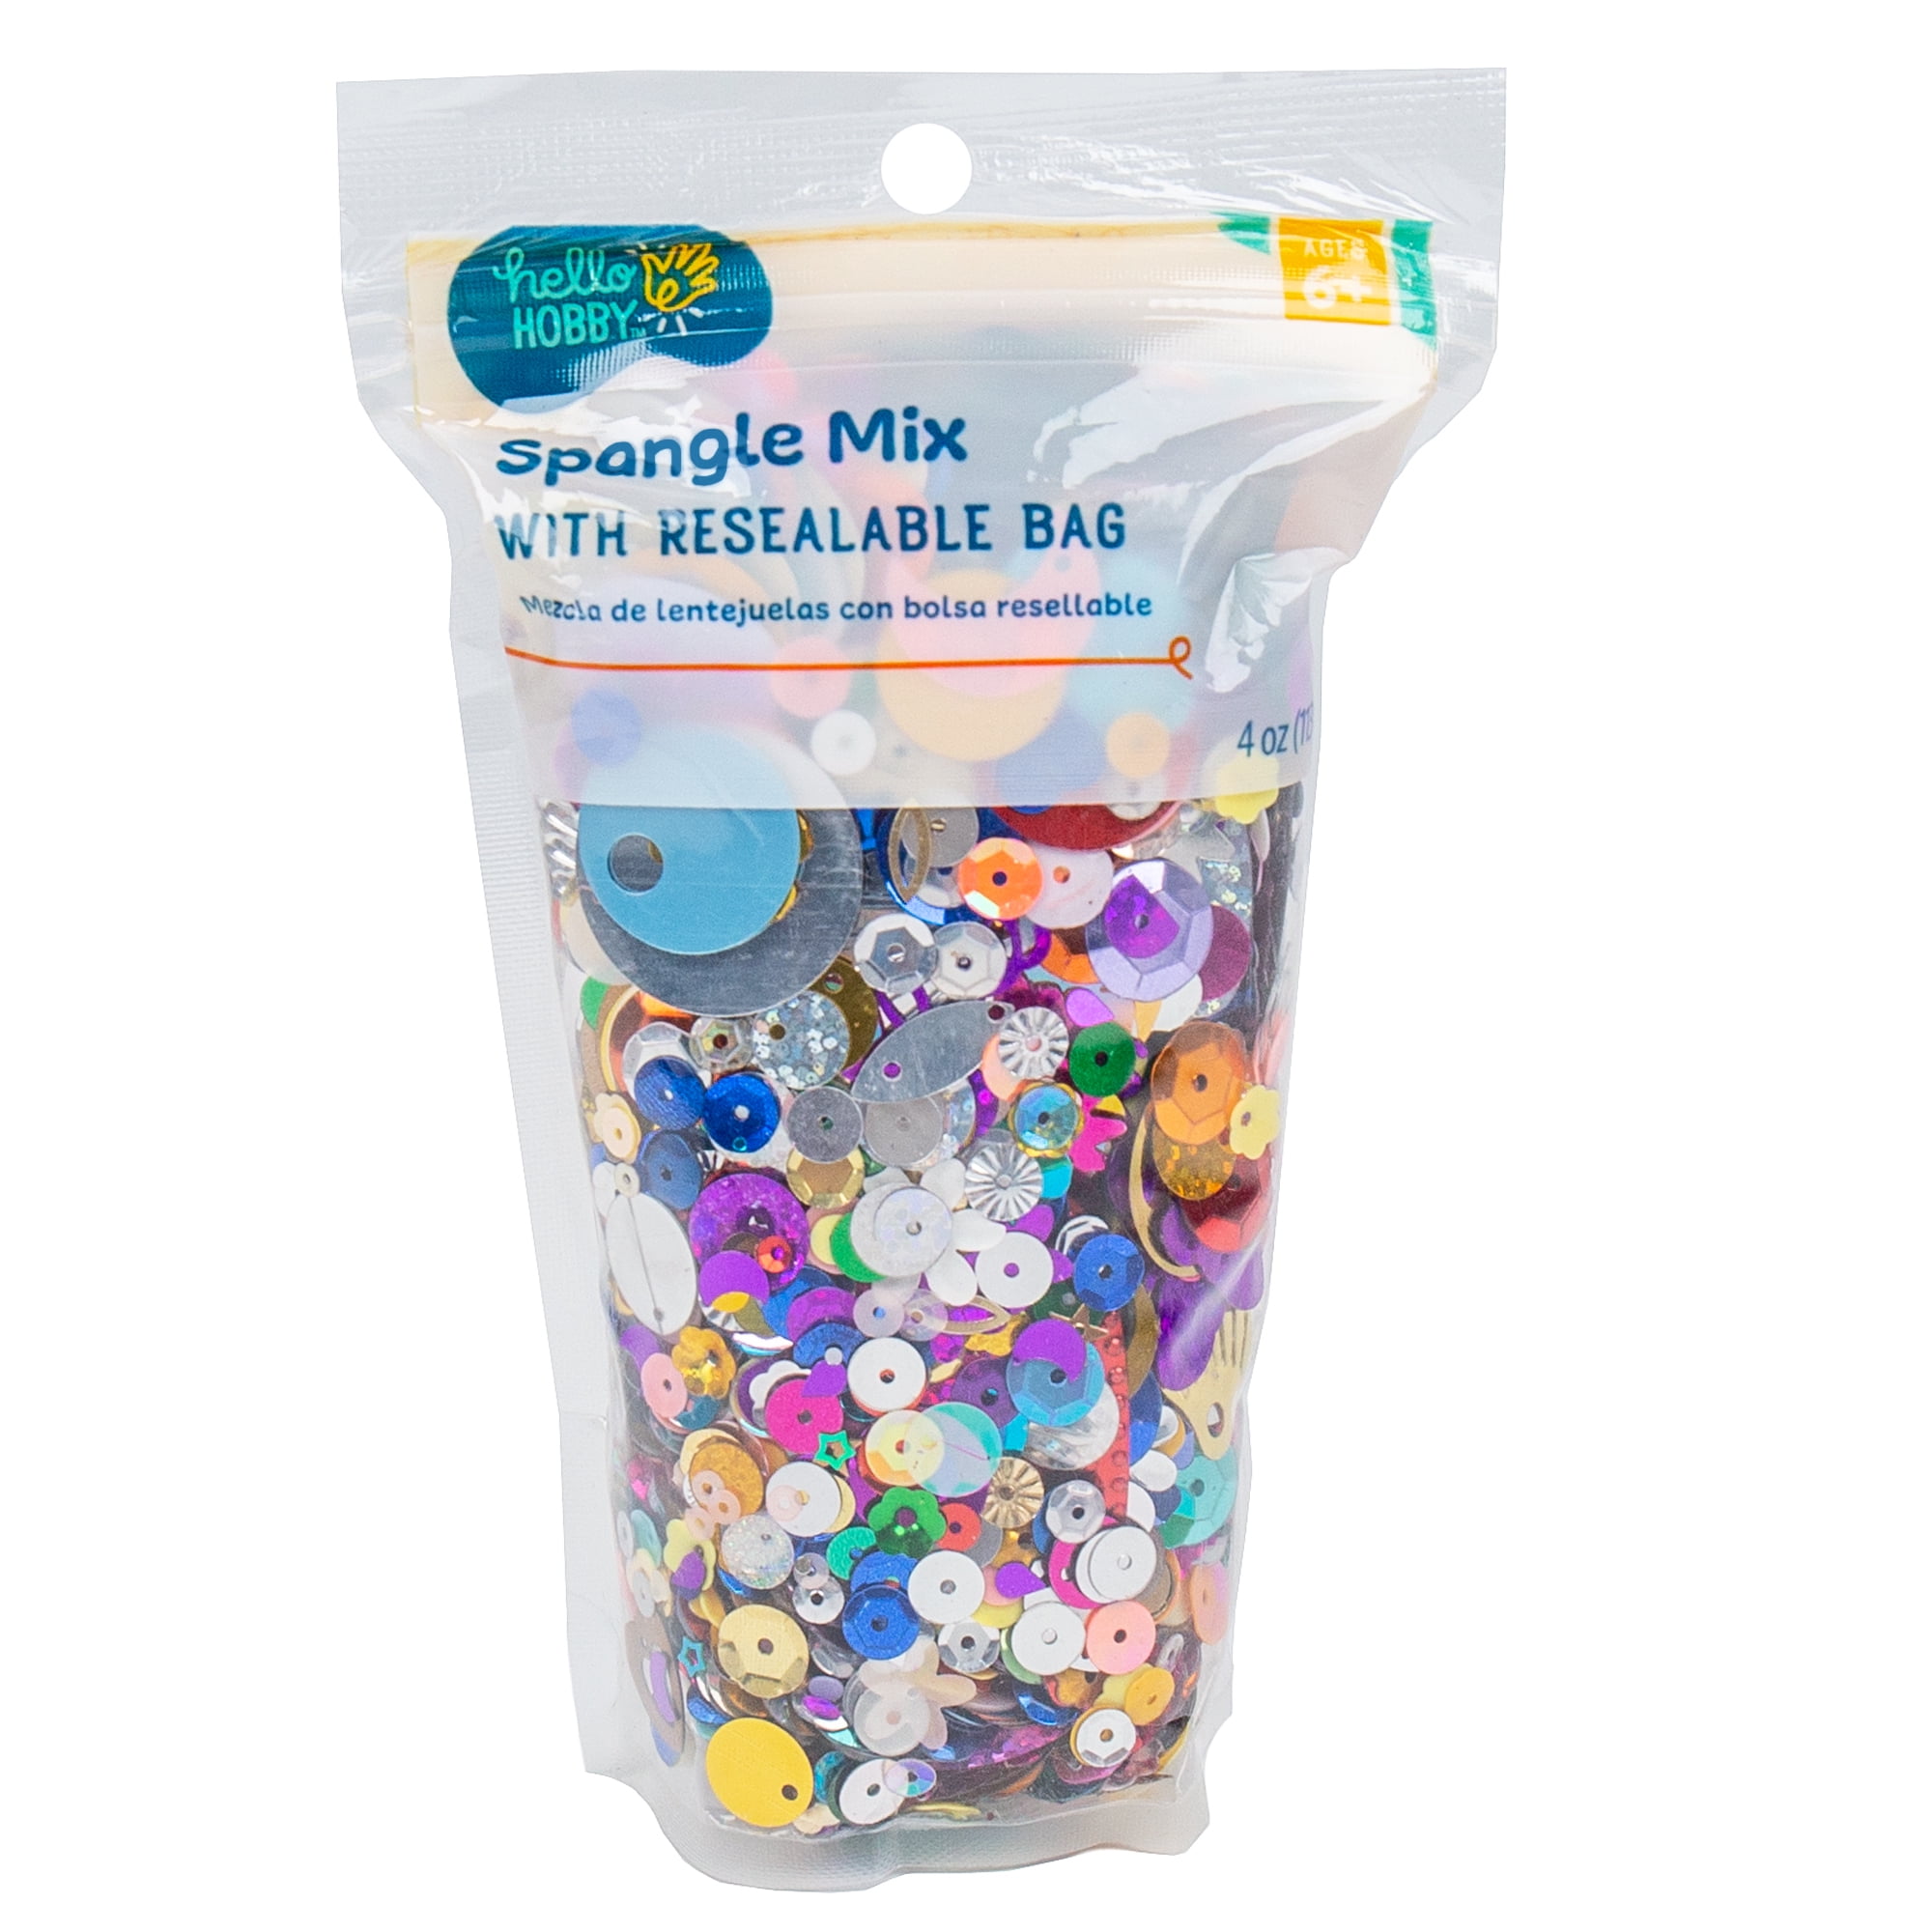 Hello Hobby Multicolor Spangle, Sequin & Confetti Mix, 4 oz., for ...